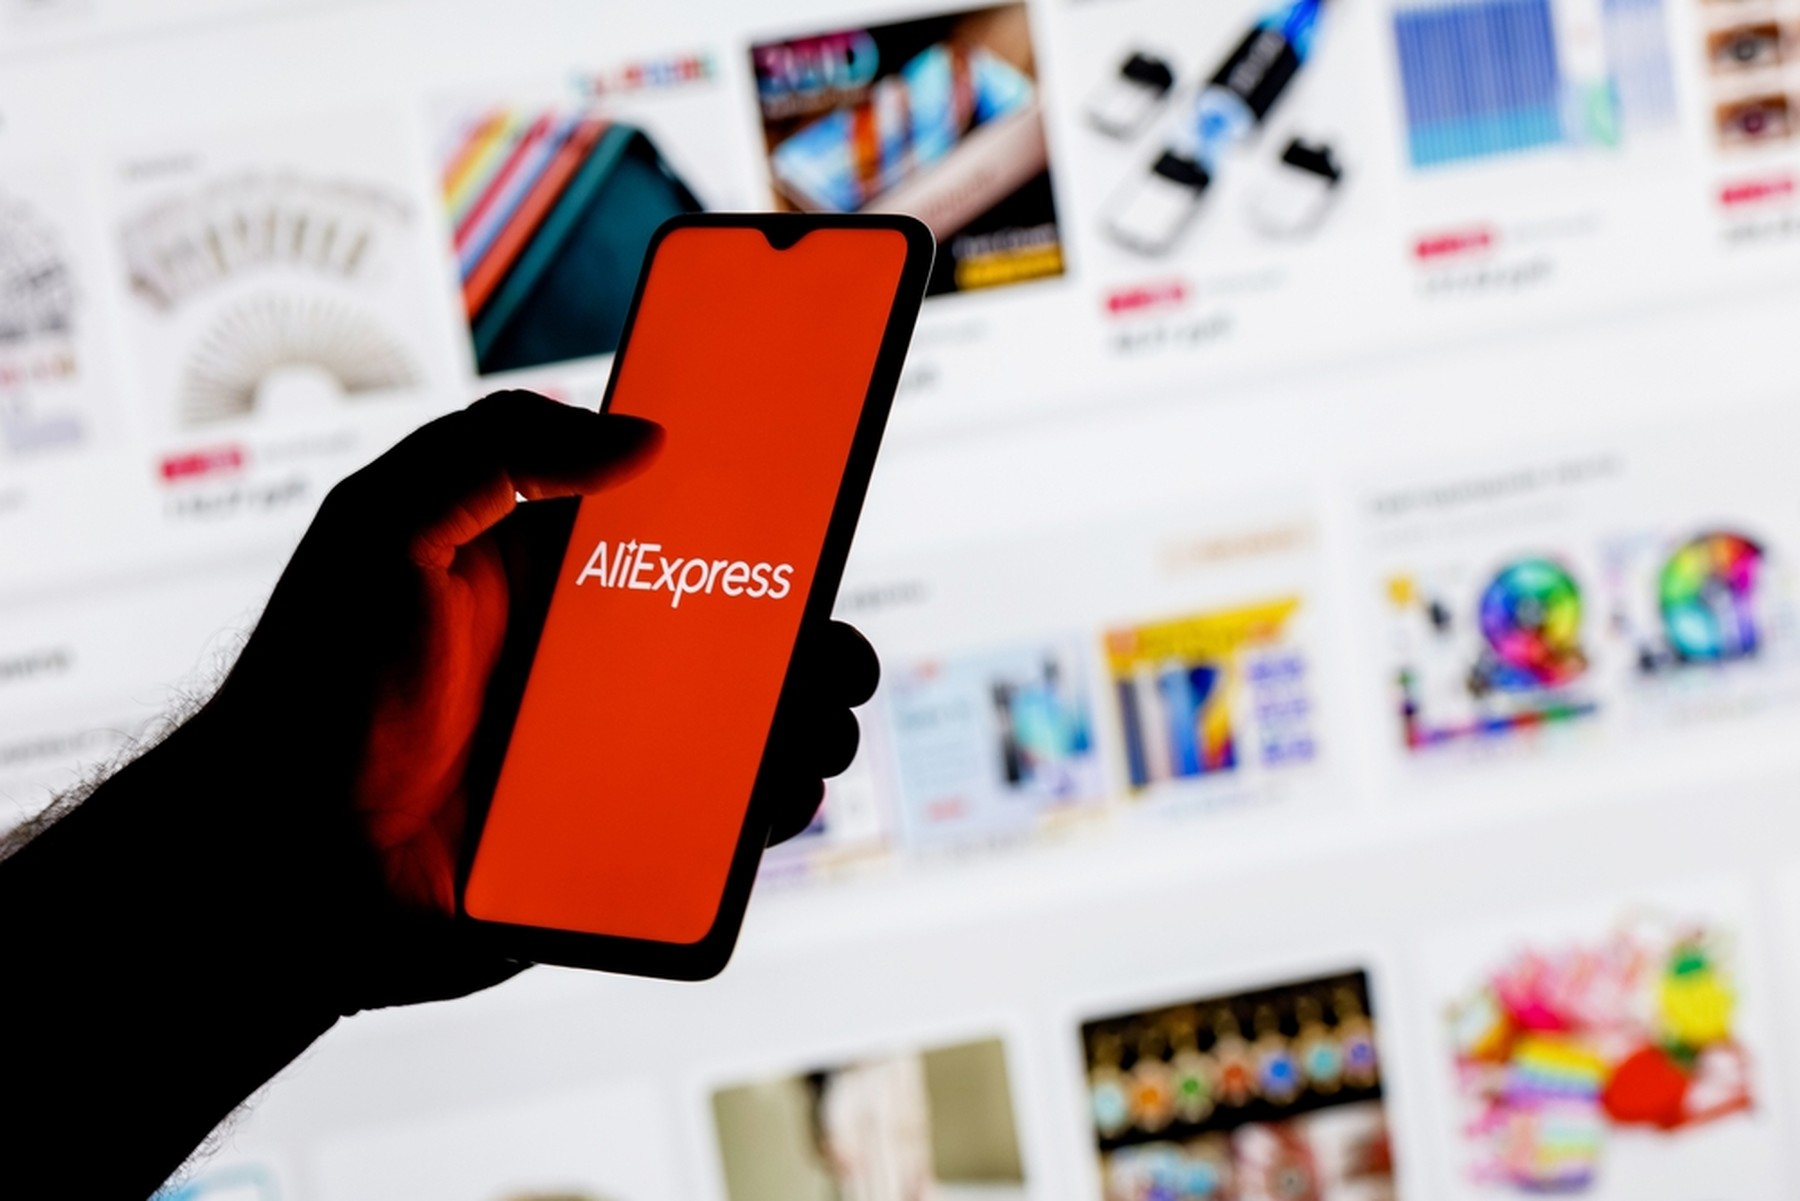 Mano de hombre con un smartphone con la pantalla en rojo con el logo de AliExpress, de fondo se ve la web de AliExpress